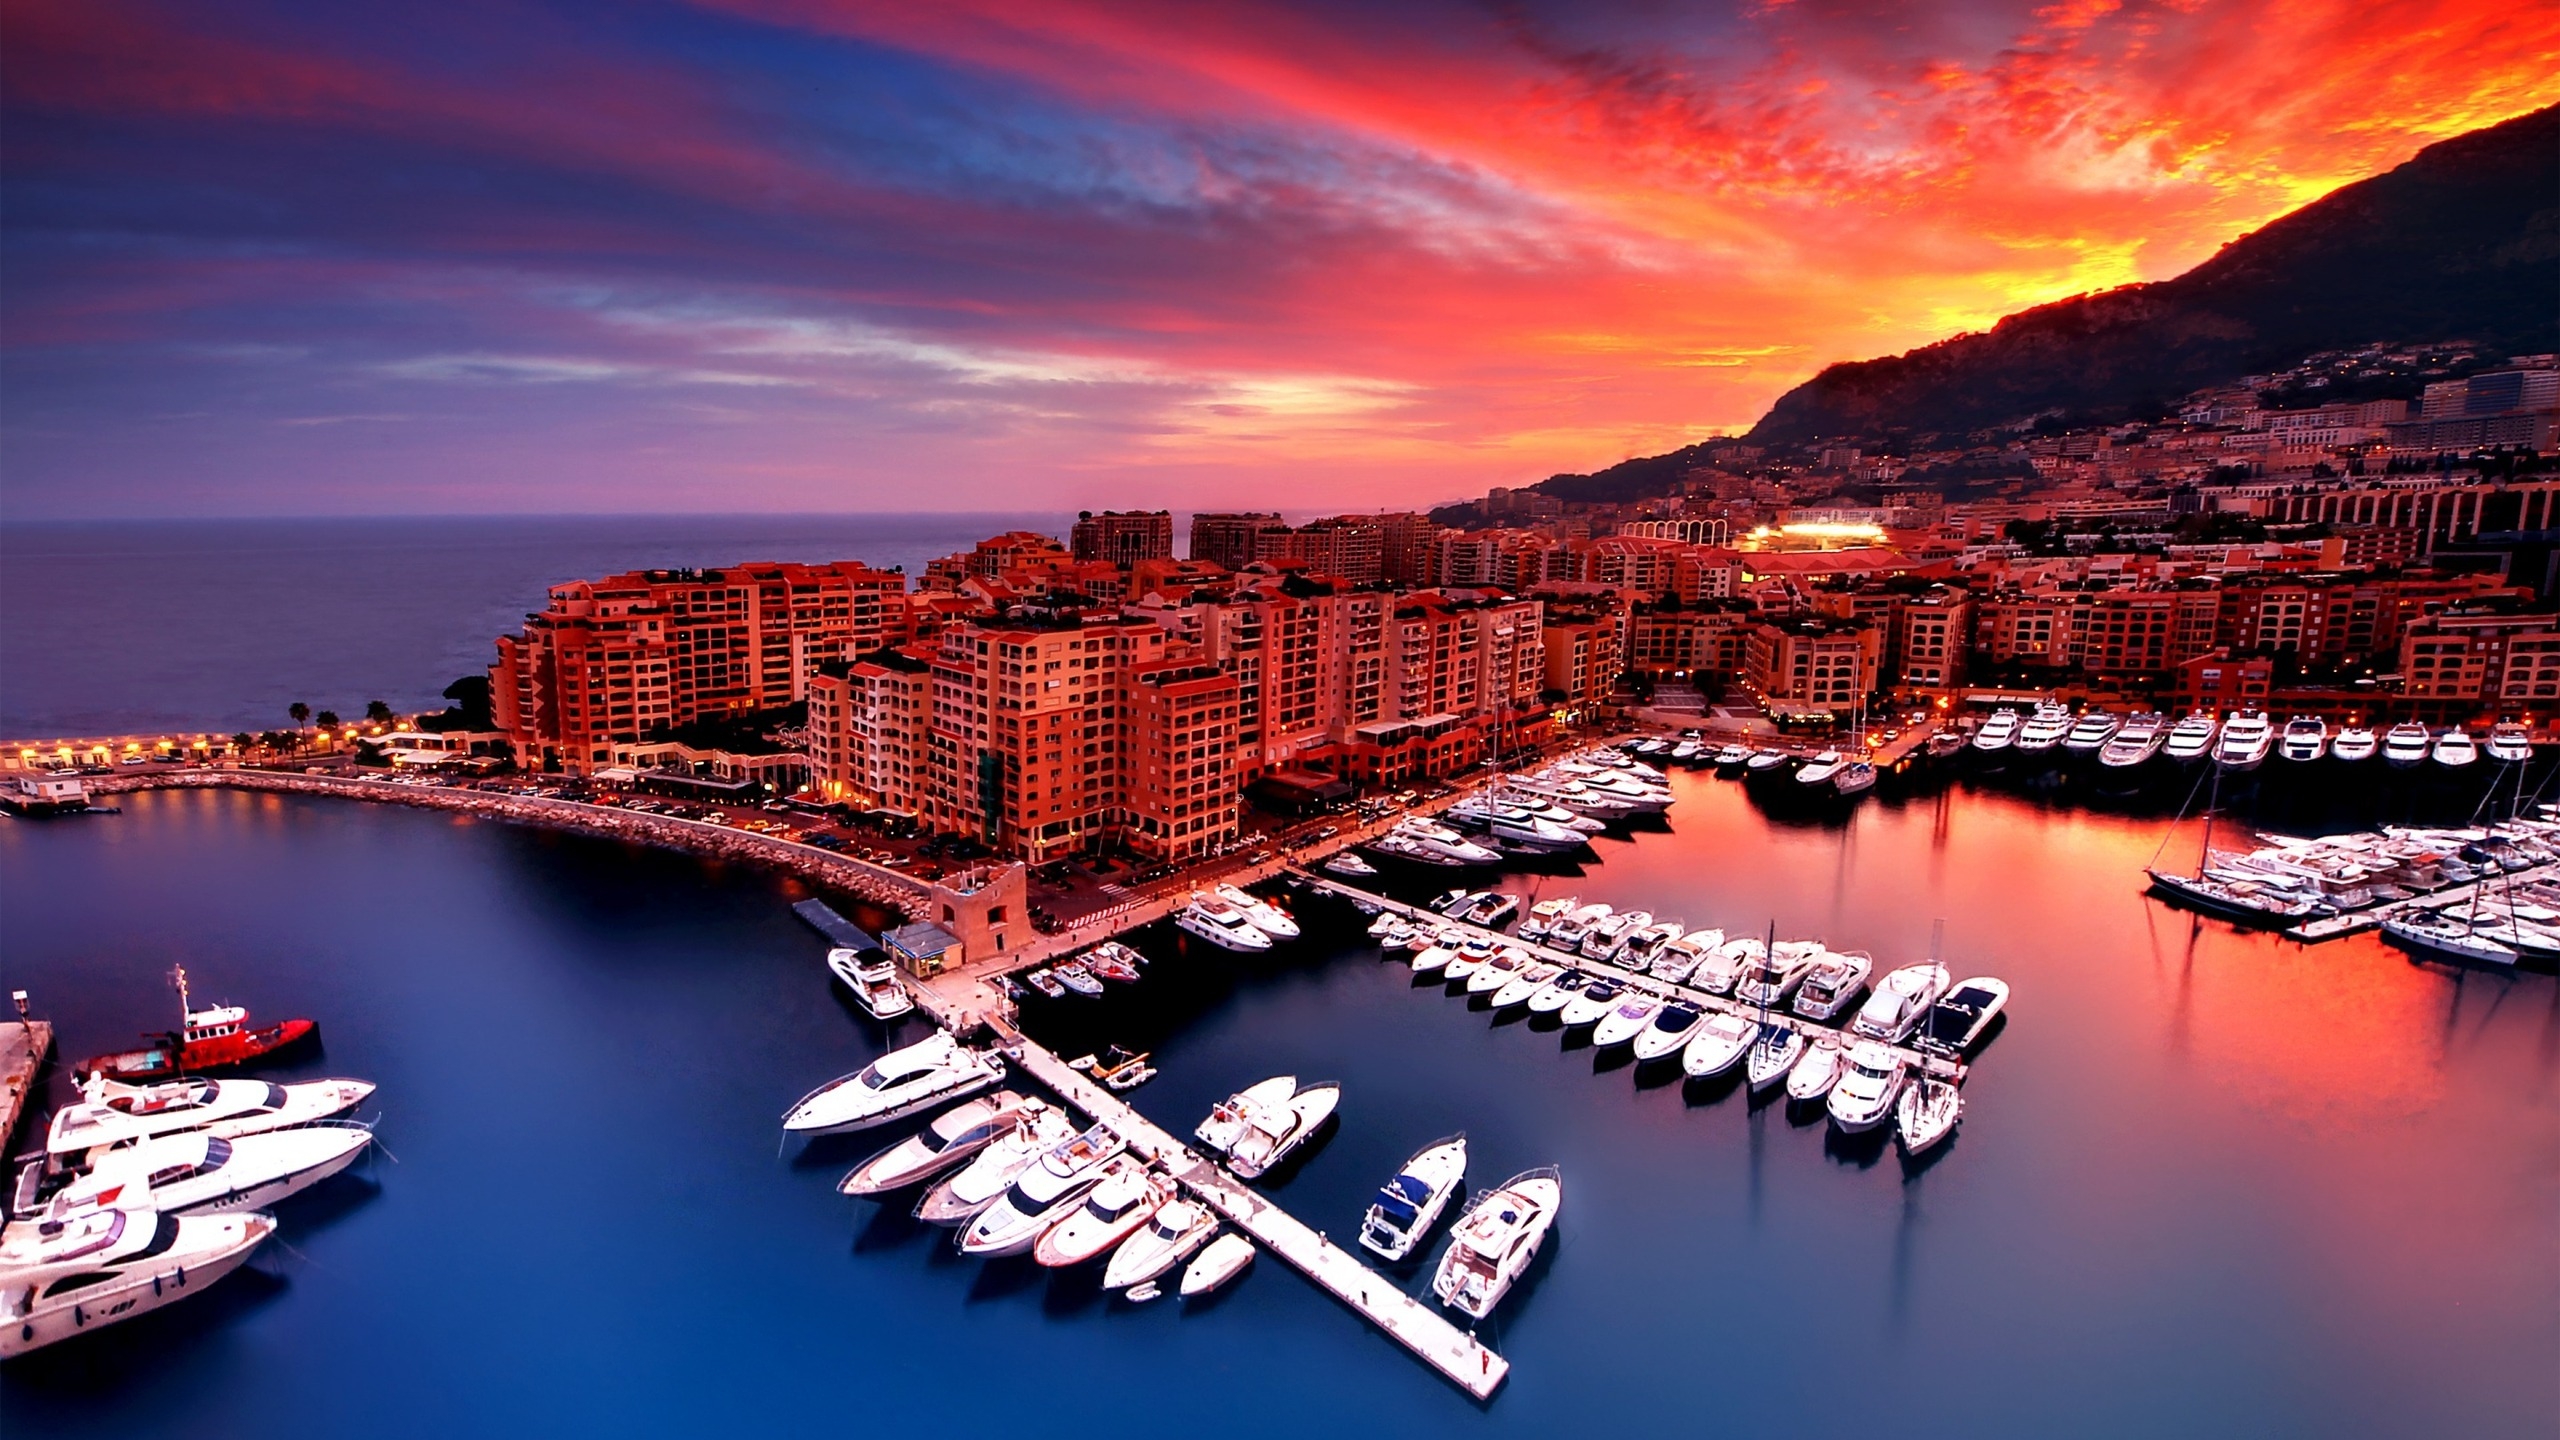 Sunrise in Monaco for 2560x1440 HDTV resolution